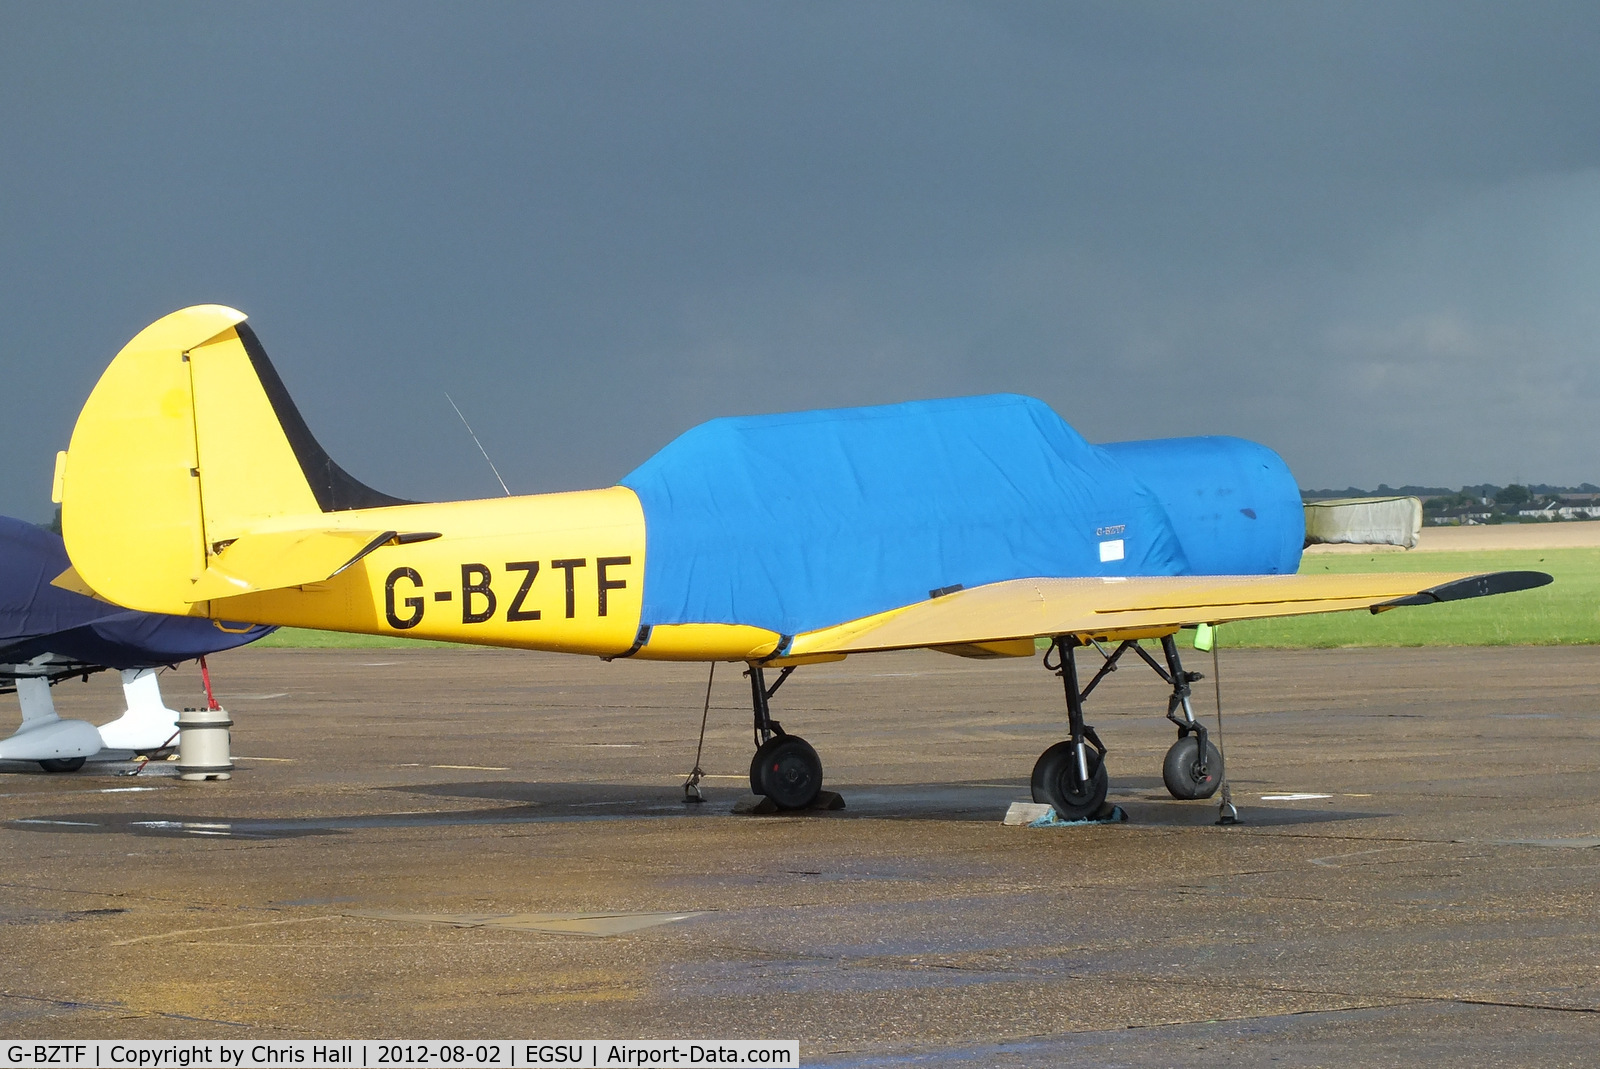 G-BZTF, 1986 Bacau Yak-52 C/N 866703, on the apron at Duxford